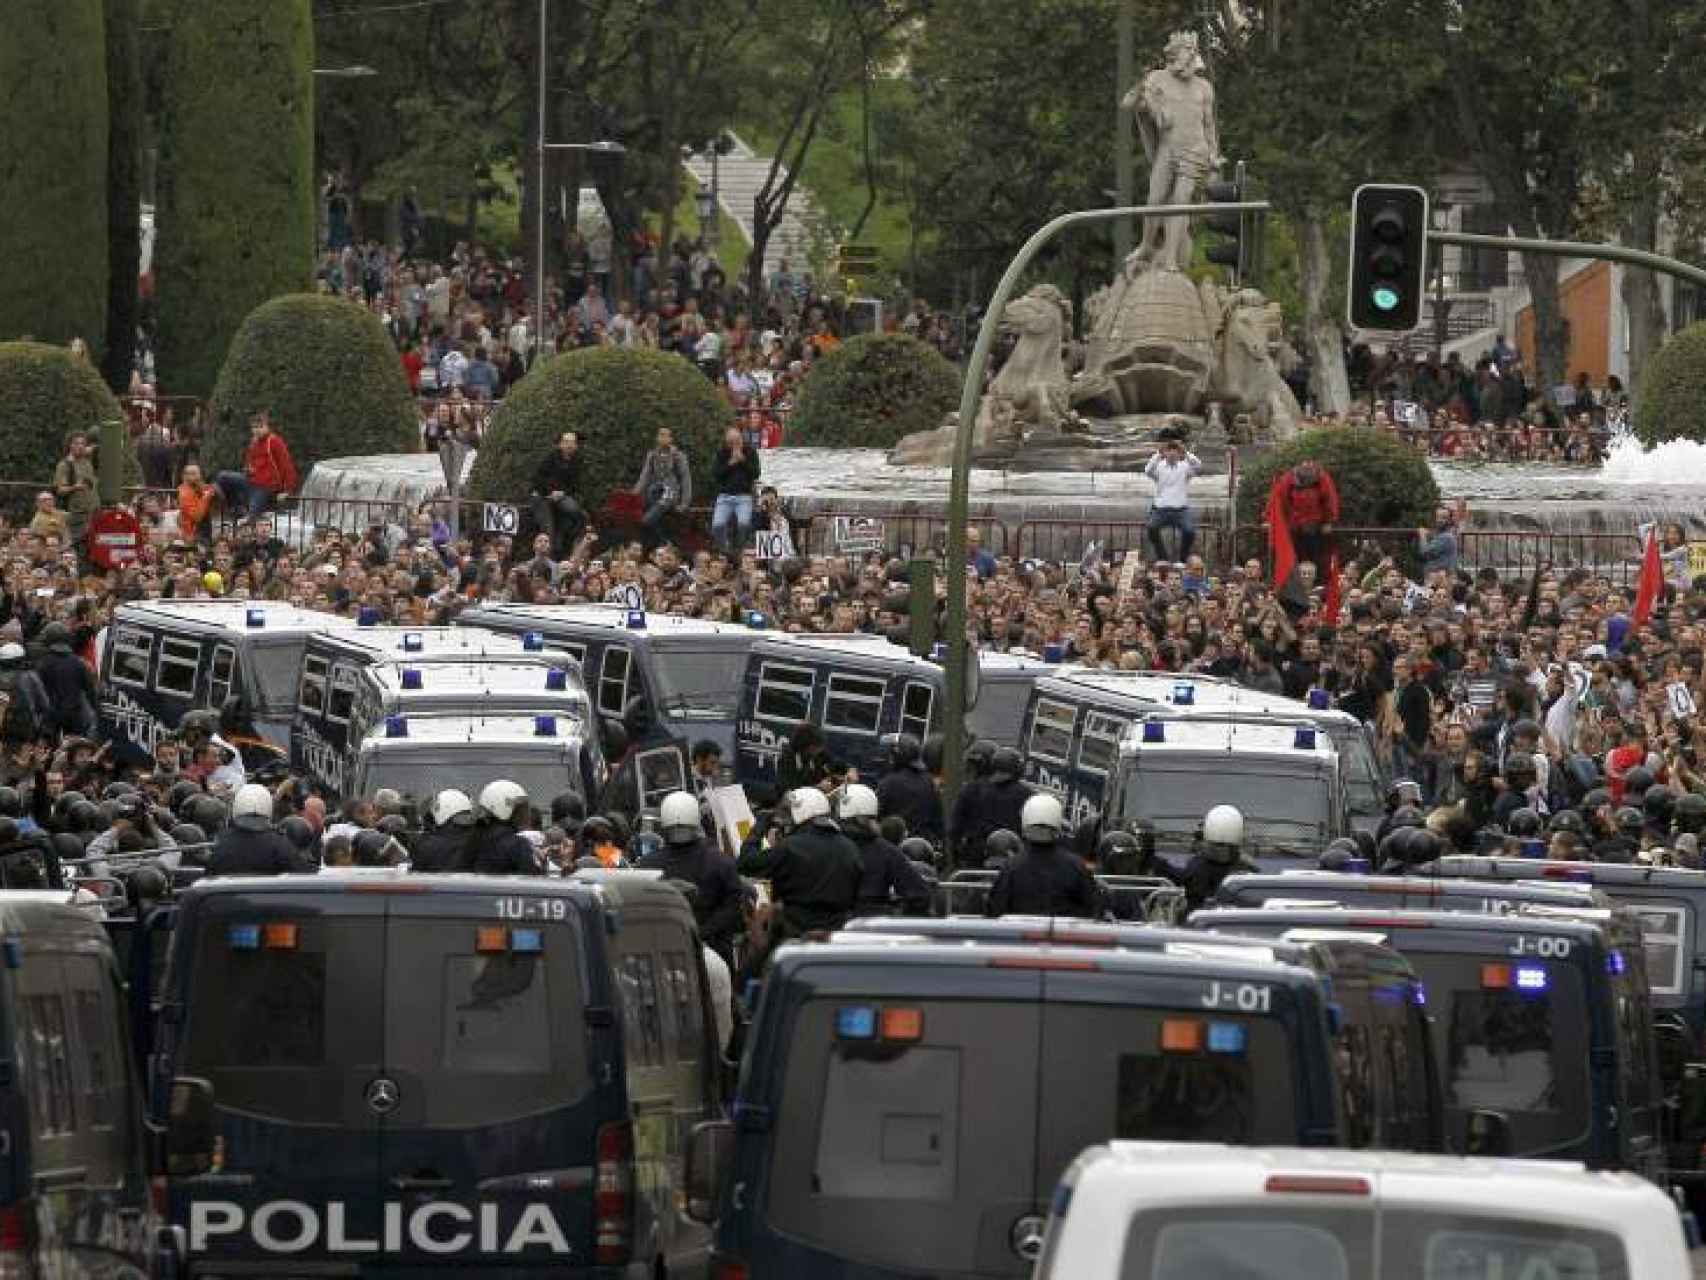 La Policía retiene a los manifestantes en la Plaza de Neptuno el 25 de septiembre de 2012.